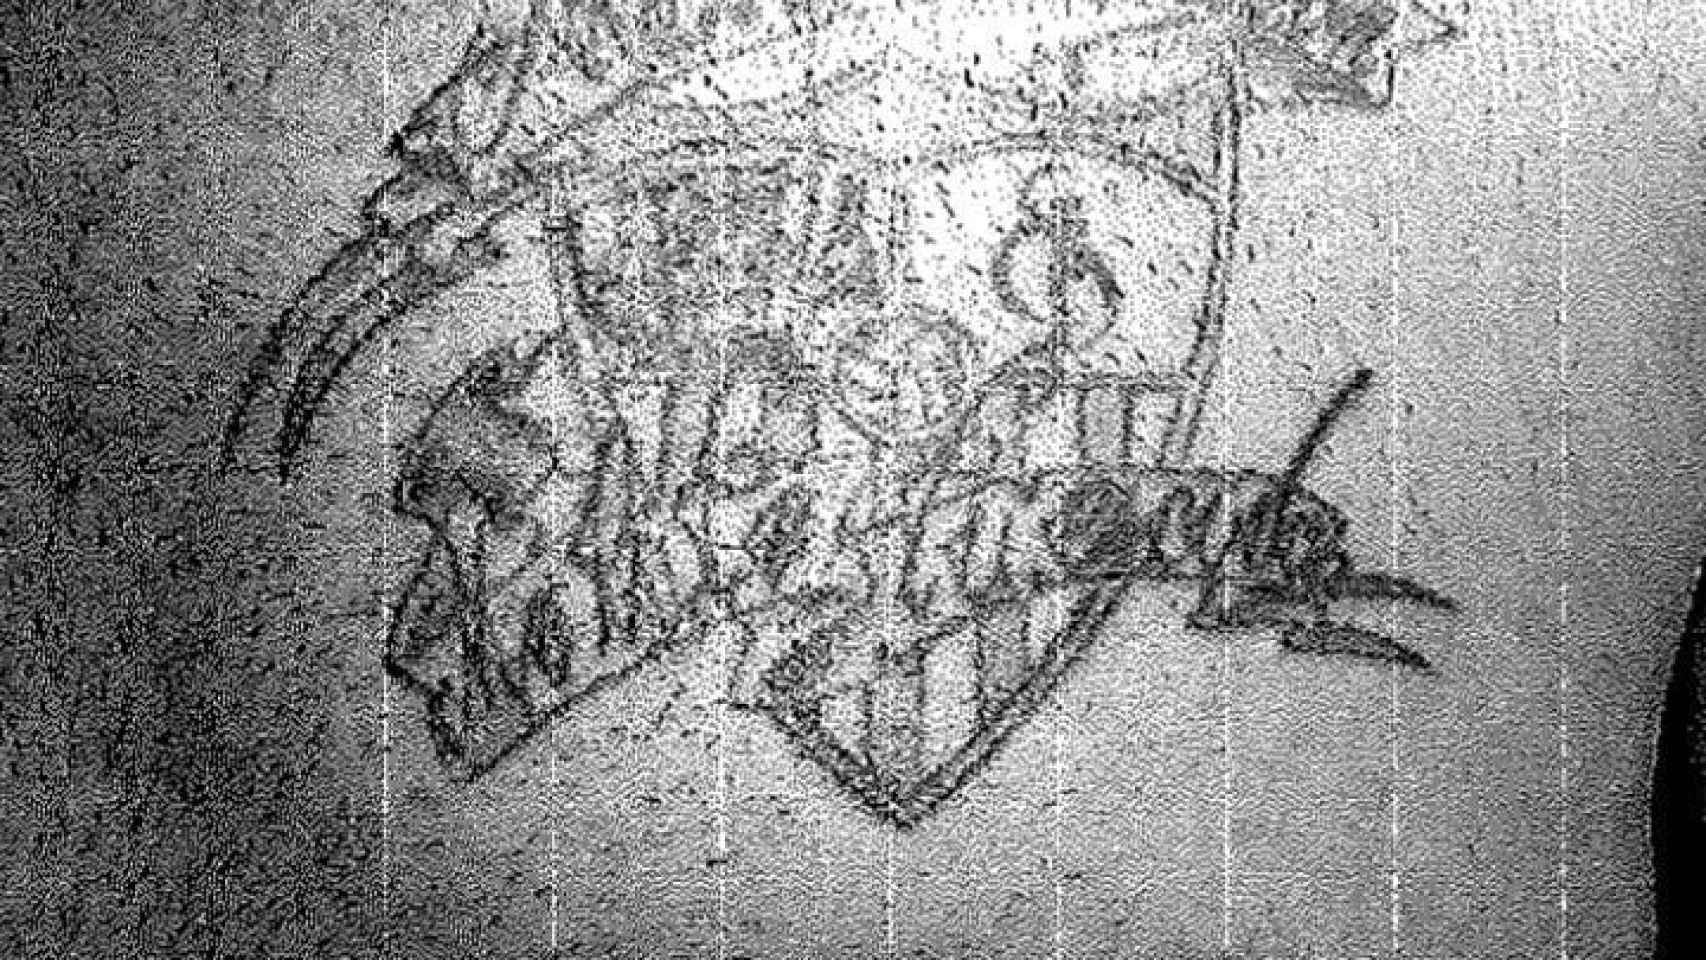 El escudo del Sevilla, tatuado en la piel de Prenda.